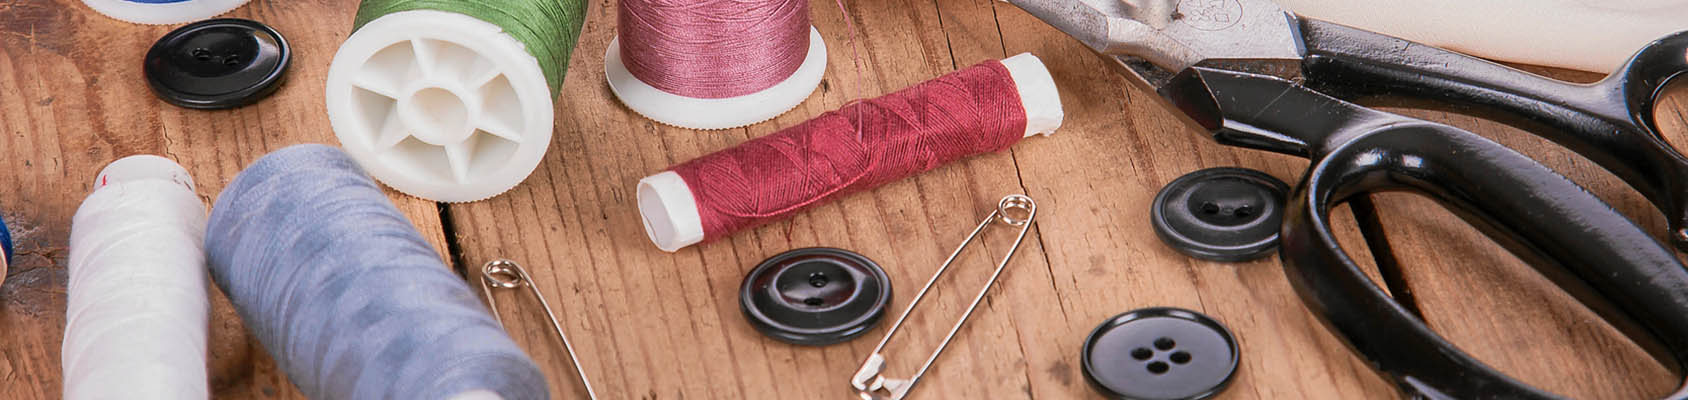 Elementos esenciales para tu máquina de coser